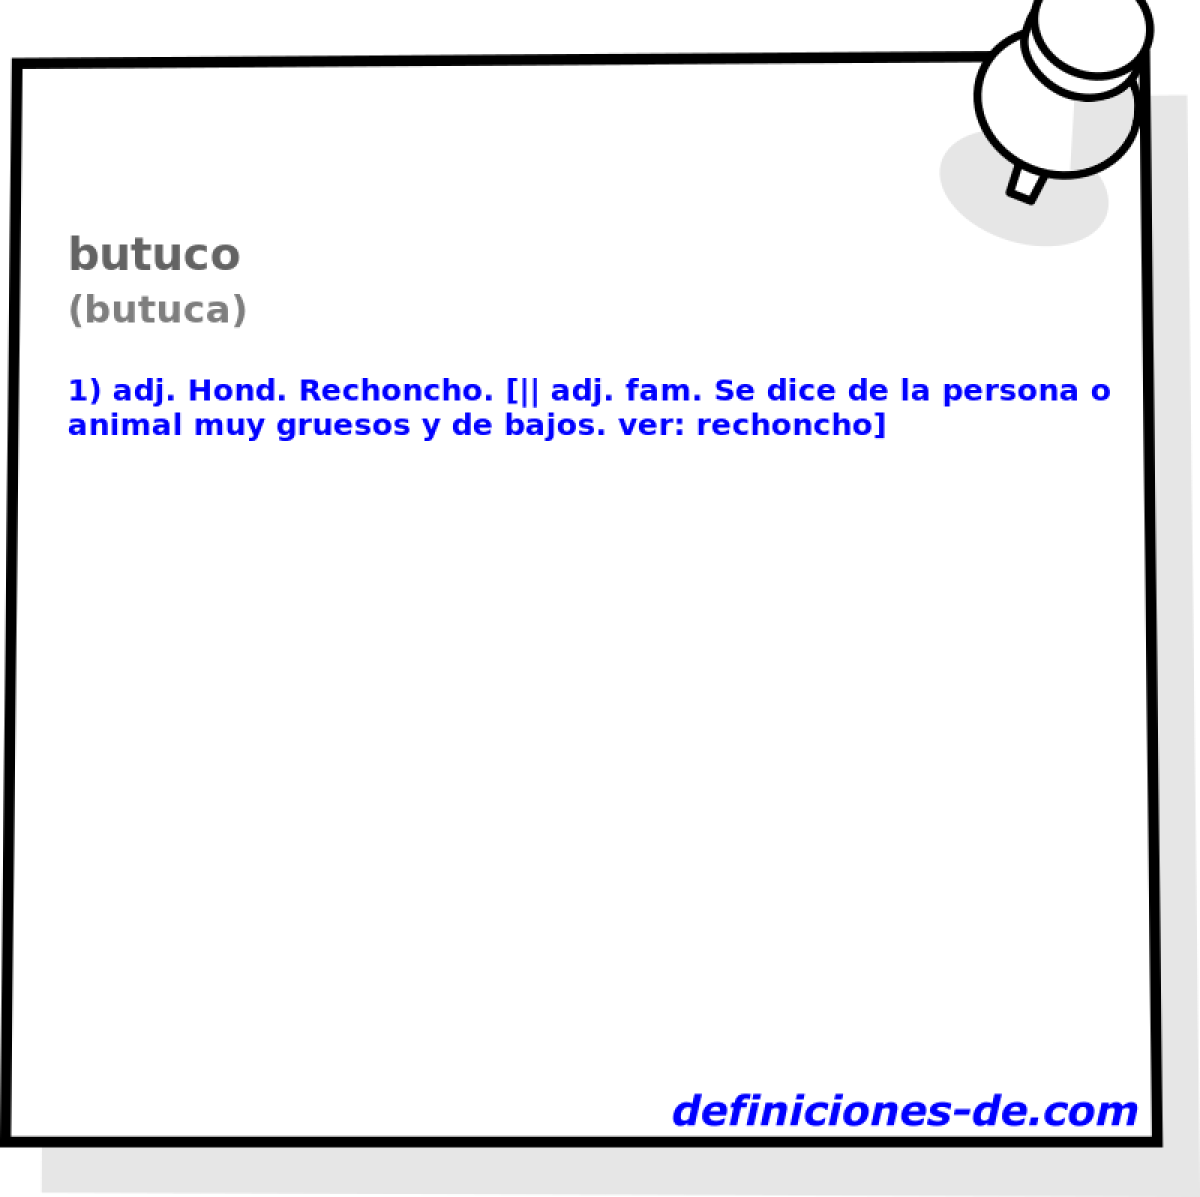 butuco (butuca)